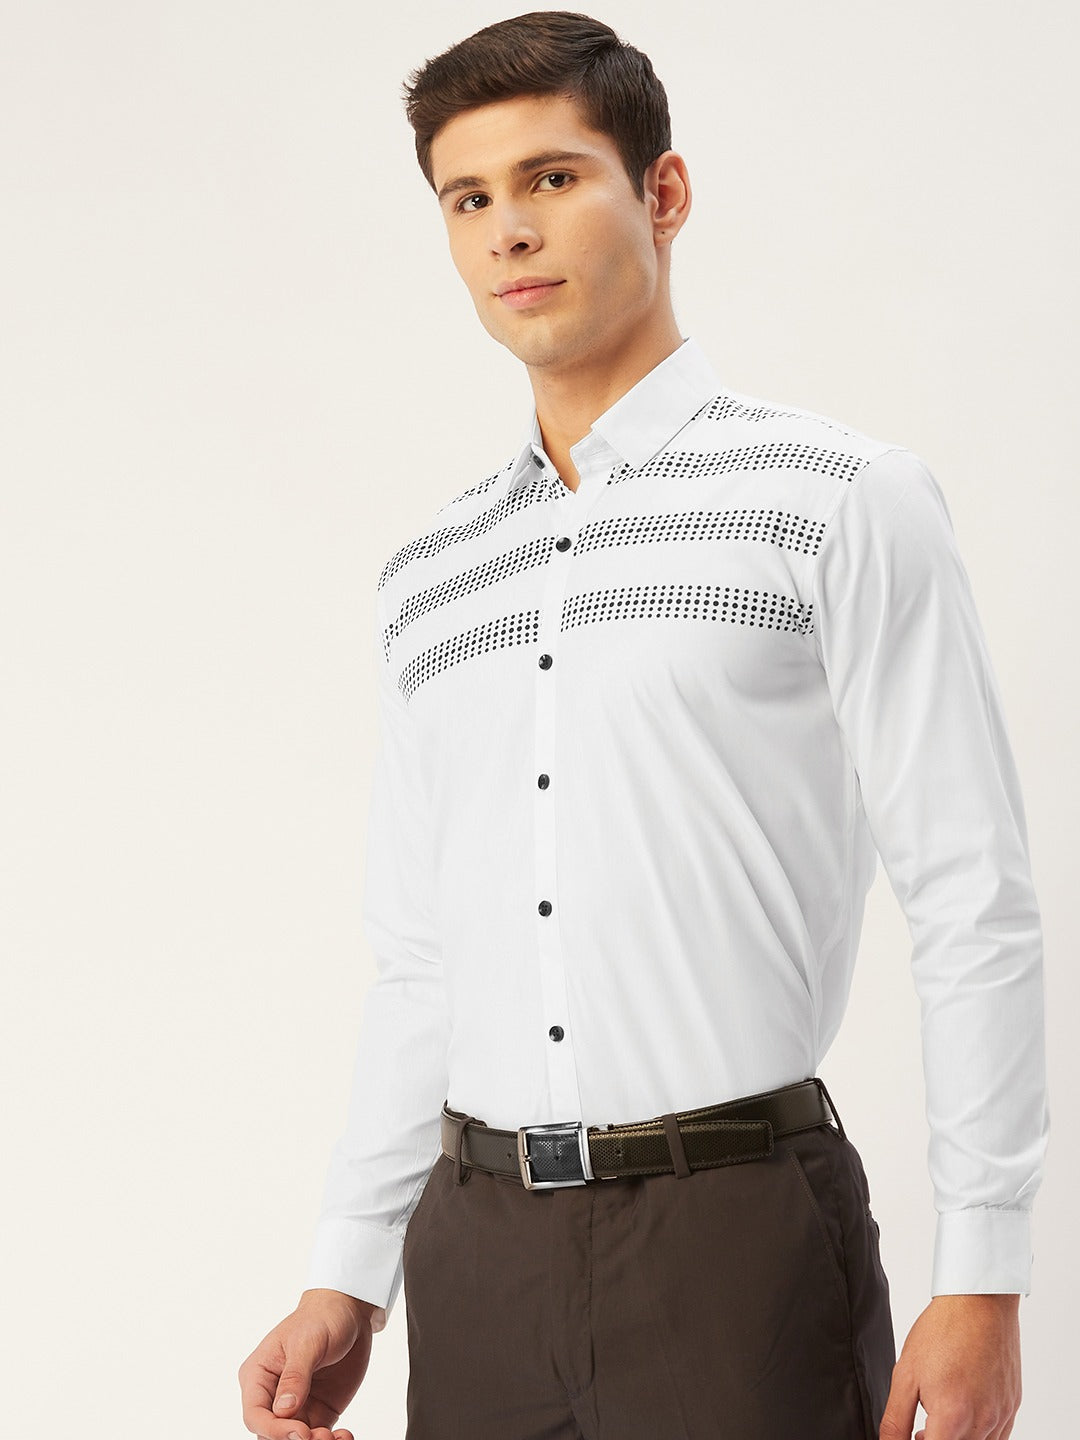 Men's Cotton Printed Formal Shirts ( SF 805White ) - Jainish